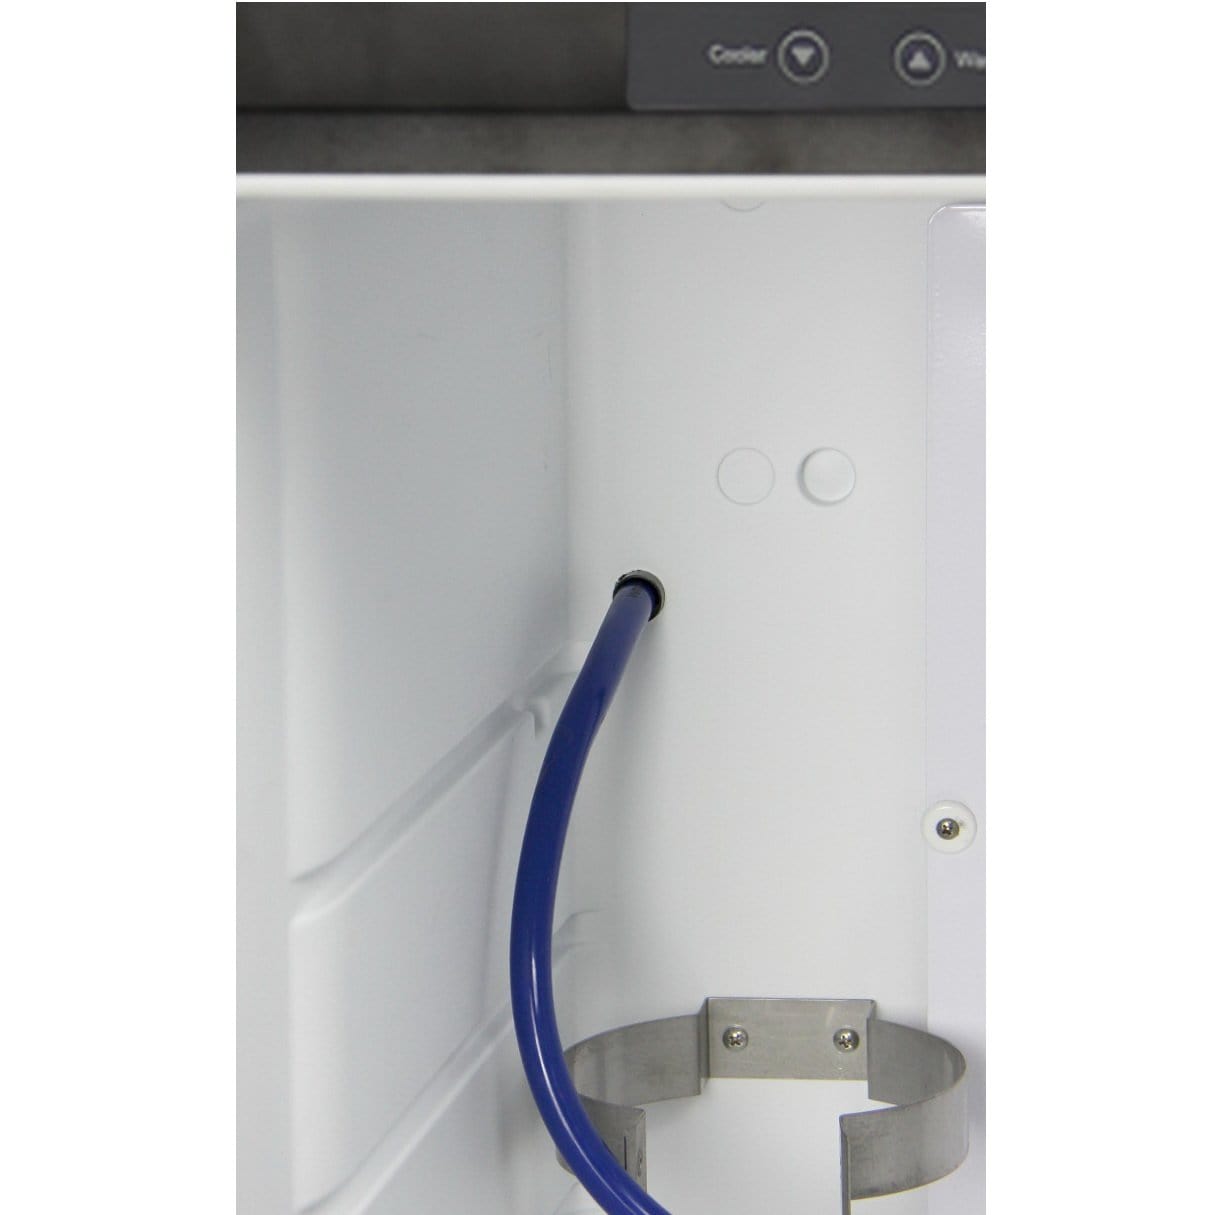 Kegco Double Faucet Digital Kombucharator - Black Cabinet with Matte Black Door